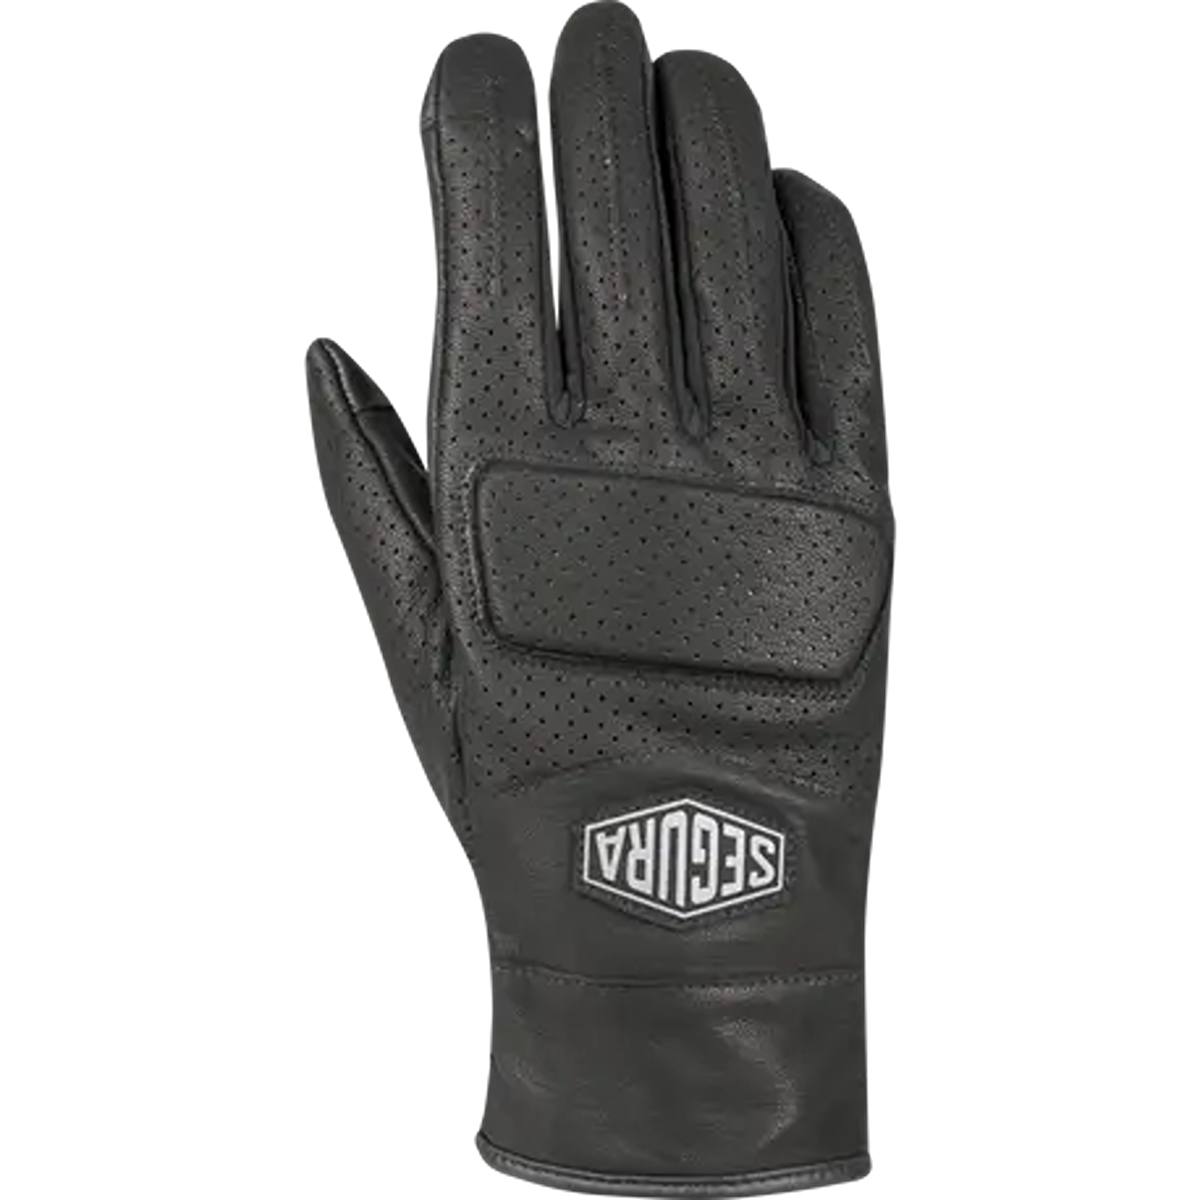 Segura Bogart Gloves Black Size T10